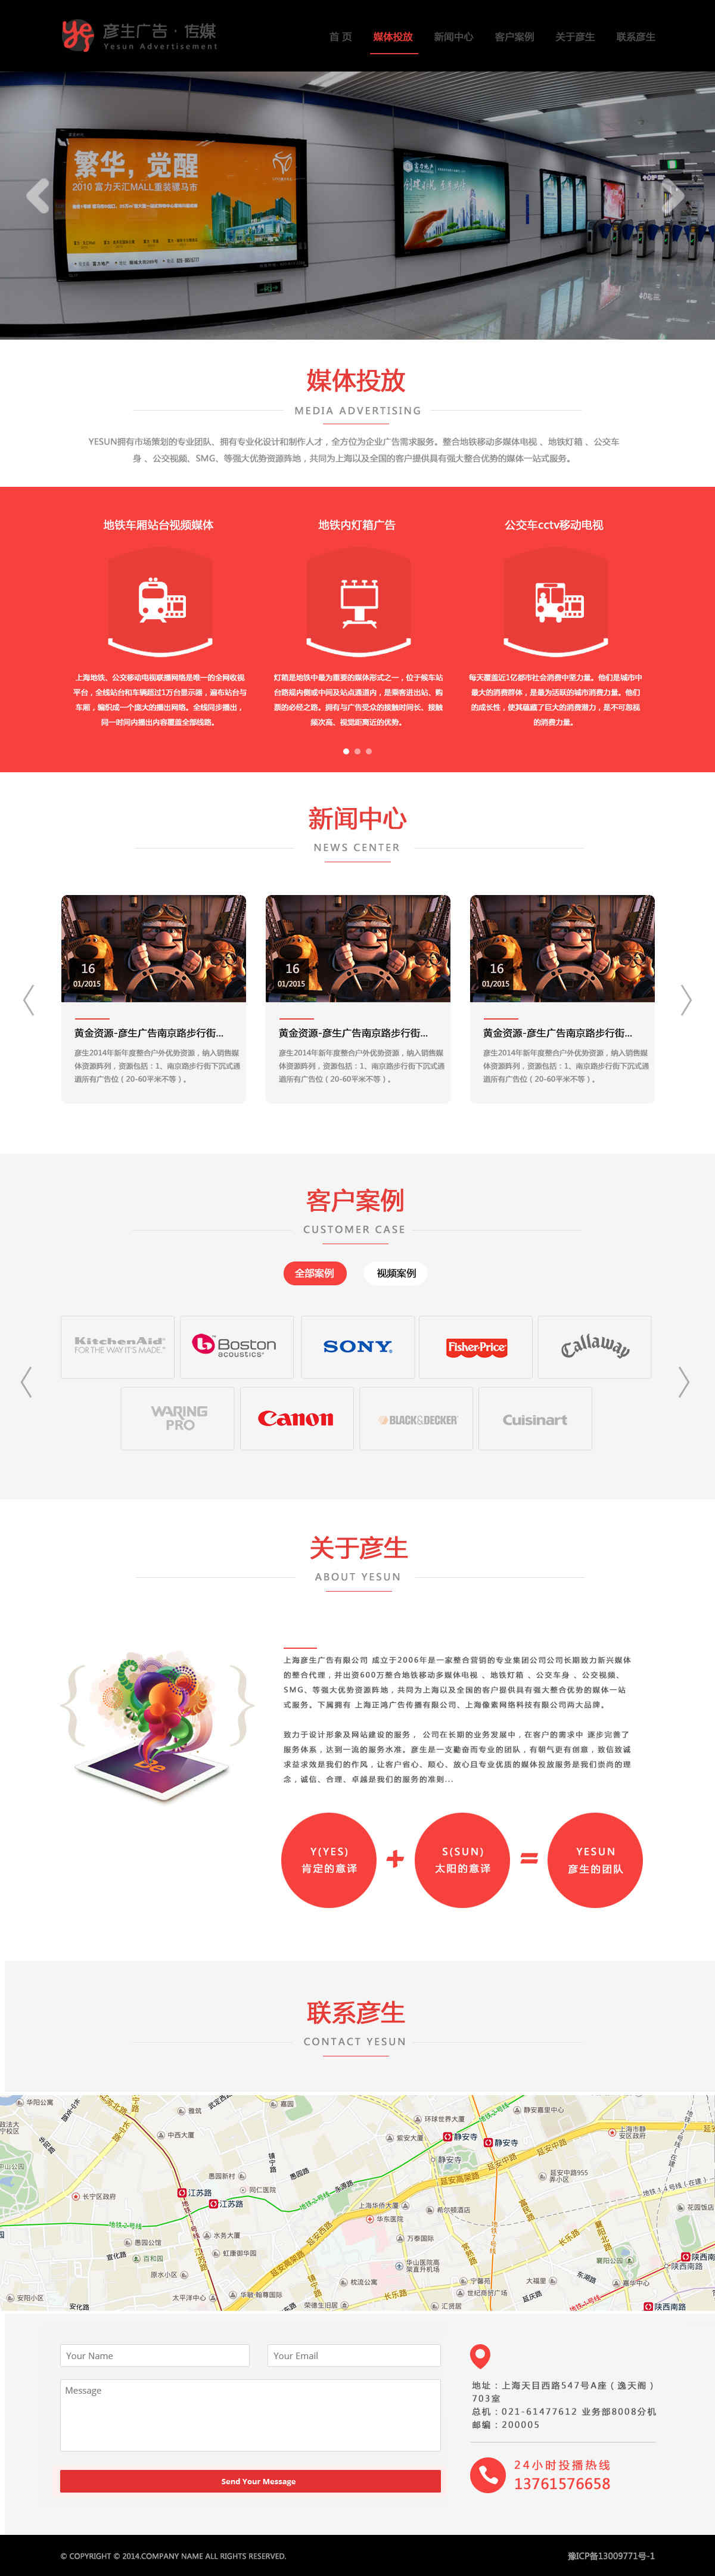 上海网站建设公司,上海软件开发公司